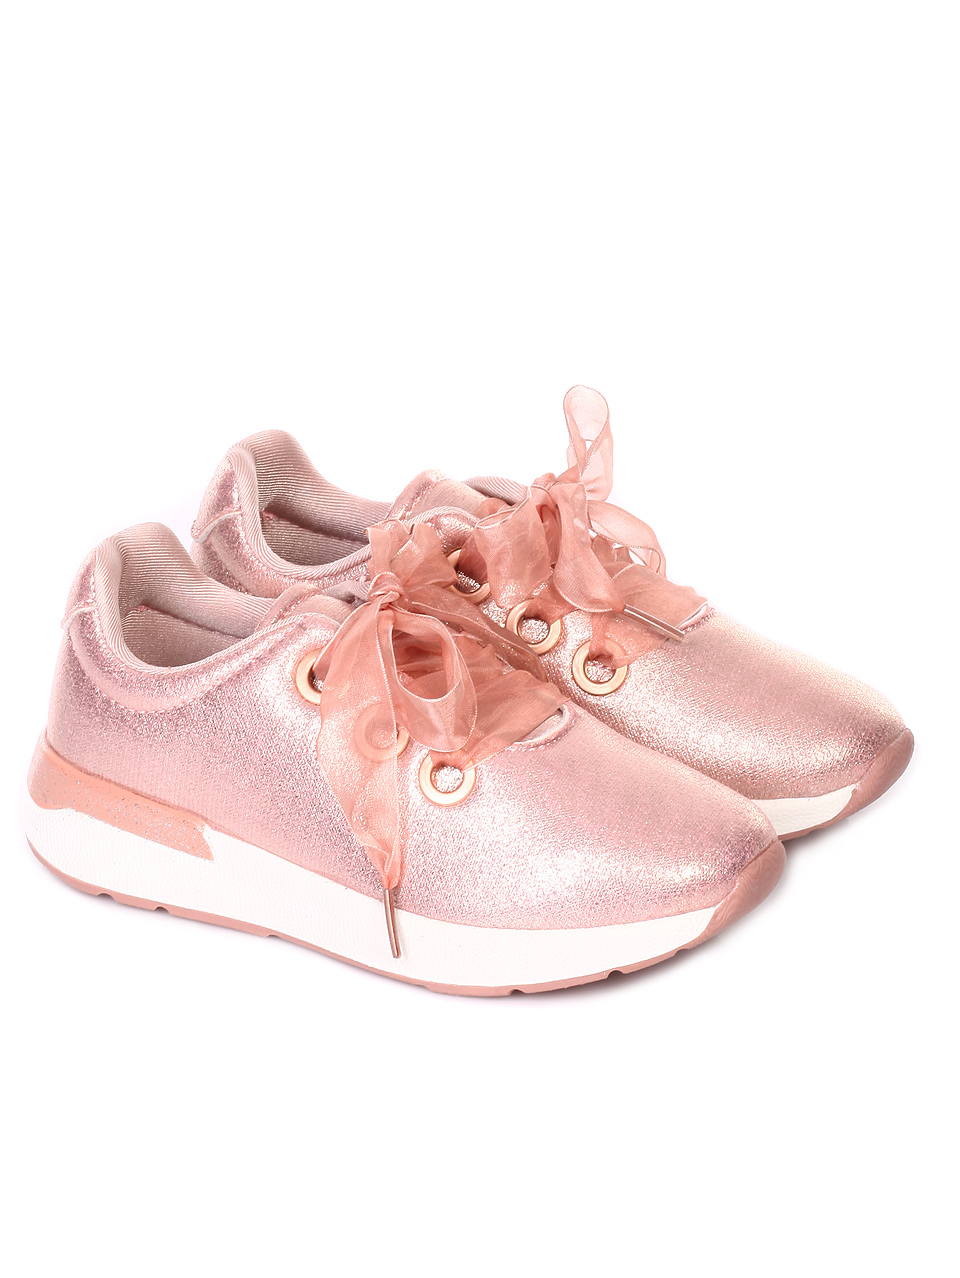 Ежедневни детски обувки в розово 18U-19170 rose gold